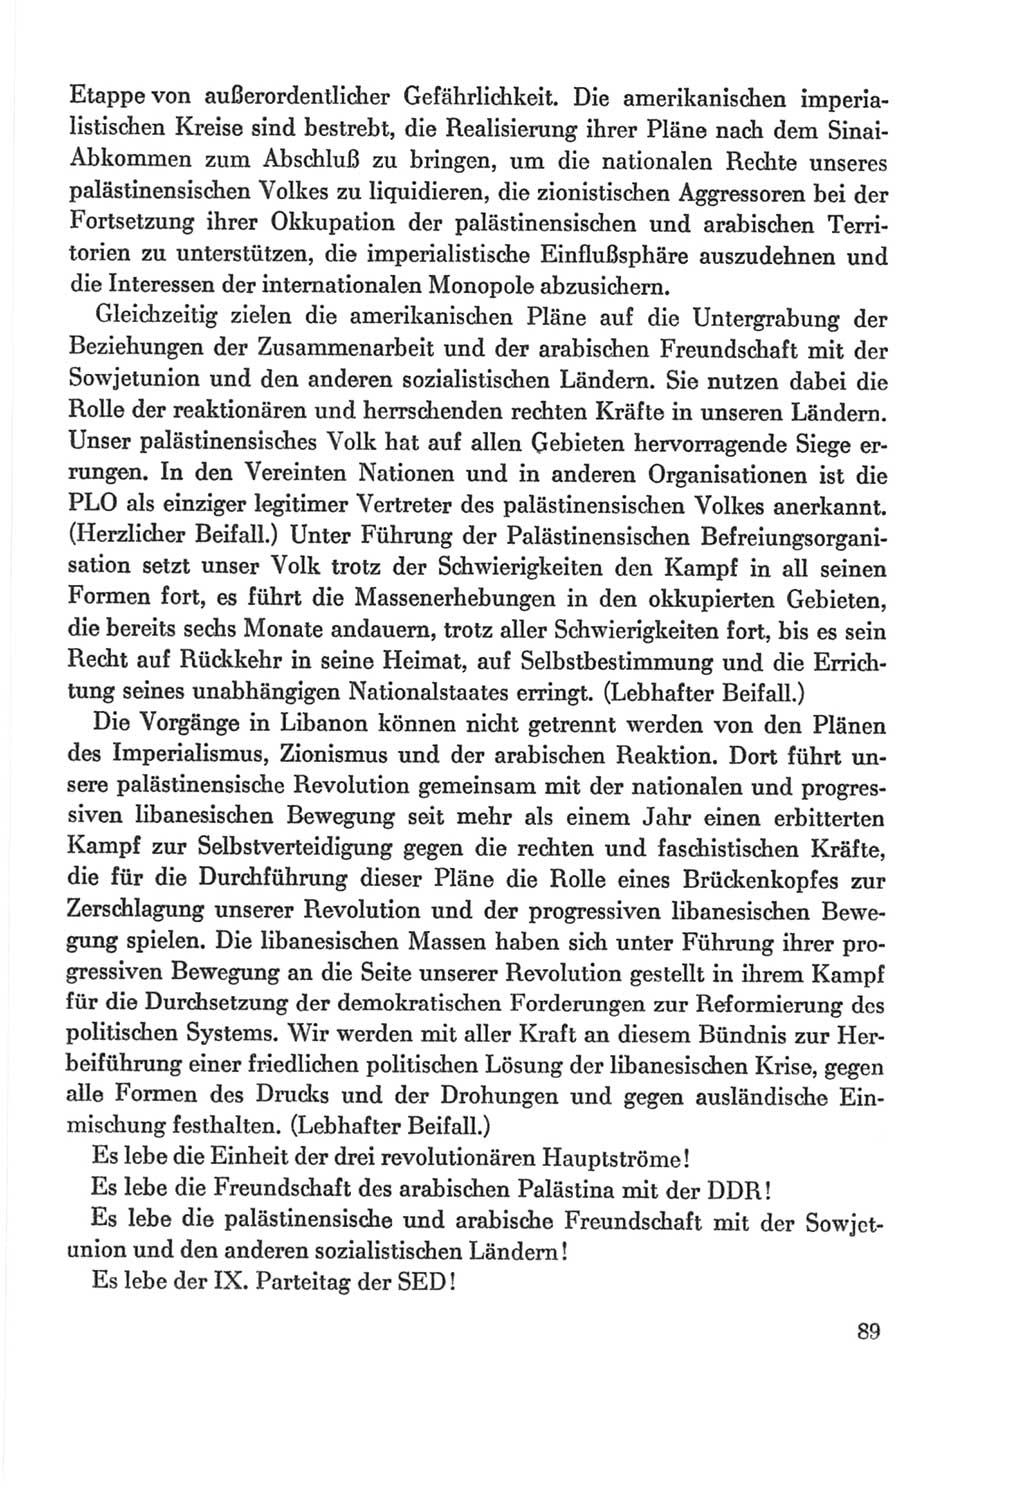 Protokoll der Verhandlungen des Ⅸ. Parteitages der Sozialistischen Einheitspartei Deutschlands (SED) [Deutsche Demokratische Republik (DDR)] 1976, Band 2, Seite 89 (Prot. Verh. Ⅸ. PT SED DDR 1976, Bd. 2, S. 89)